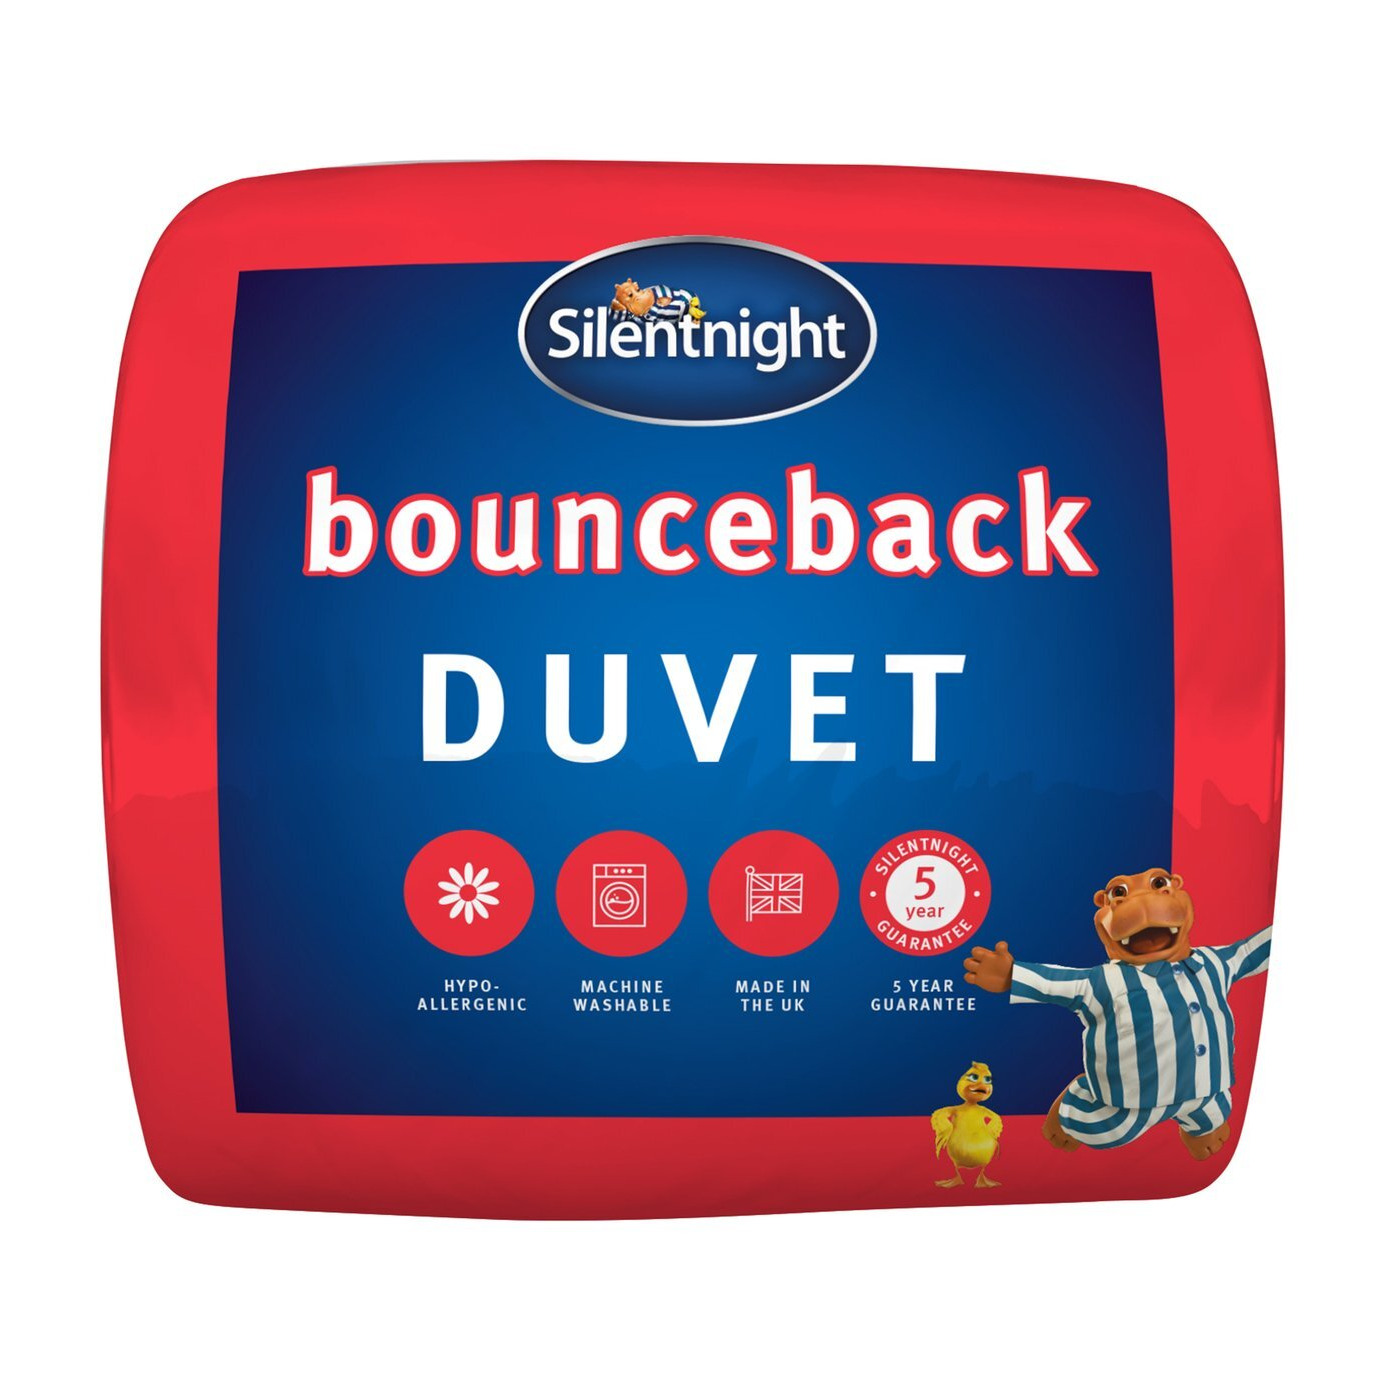 Silentnight Bounceback 10.5 Tog Duvet - Kingsize - image 1